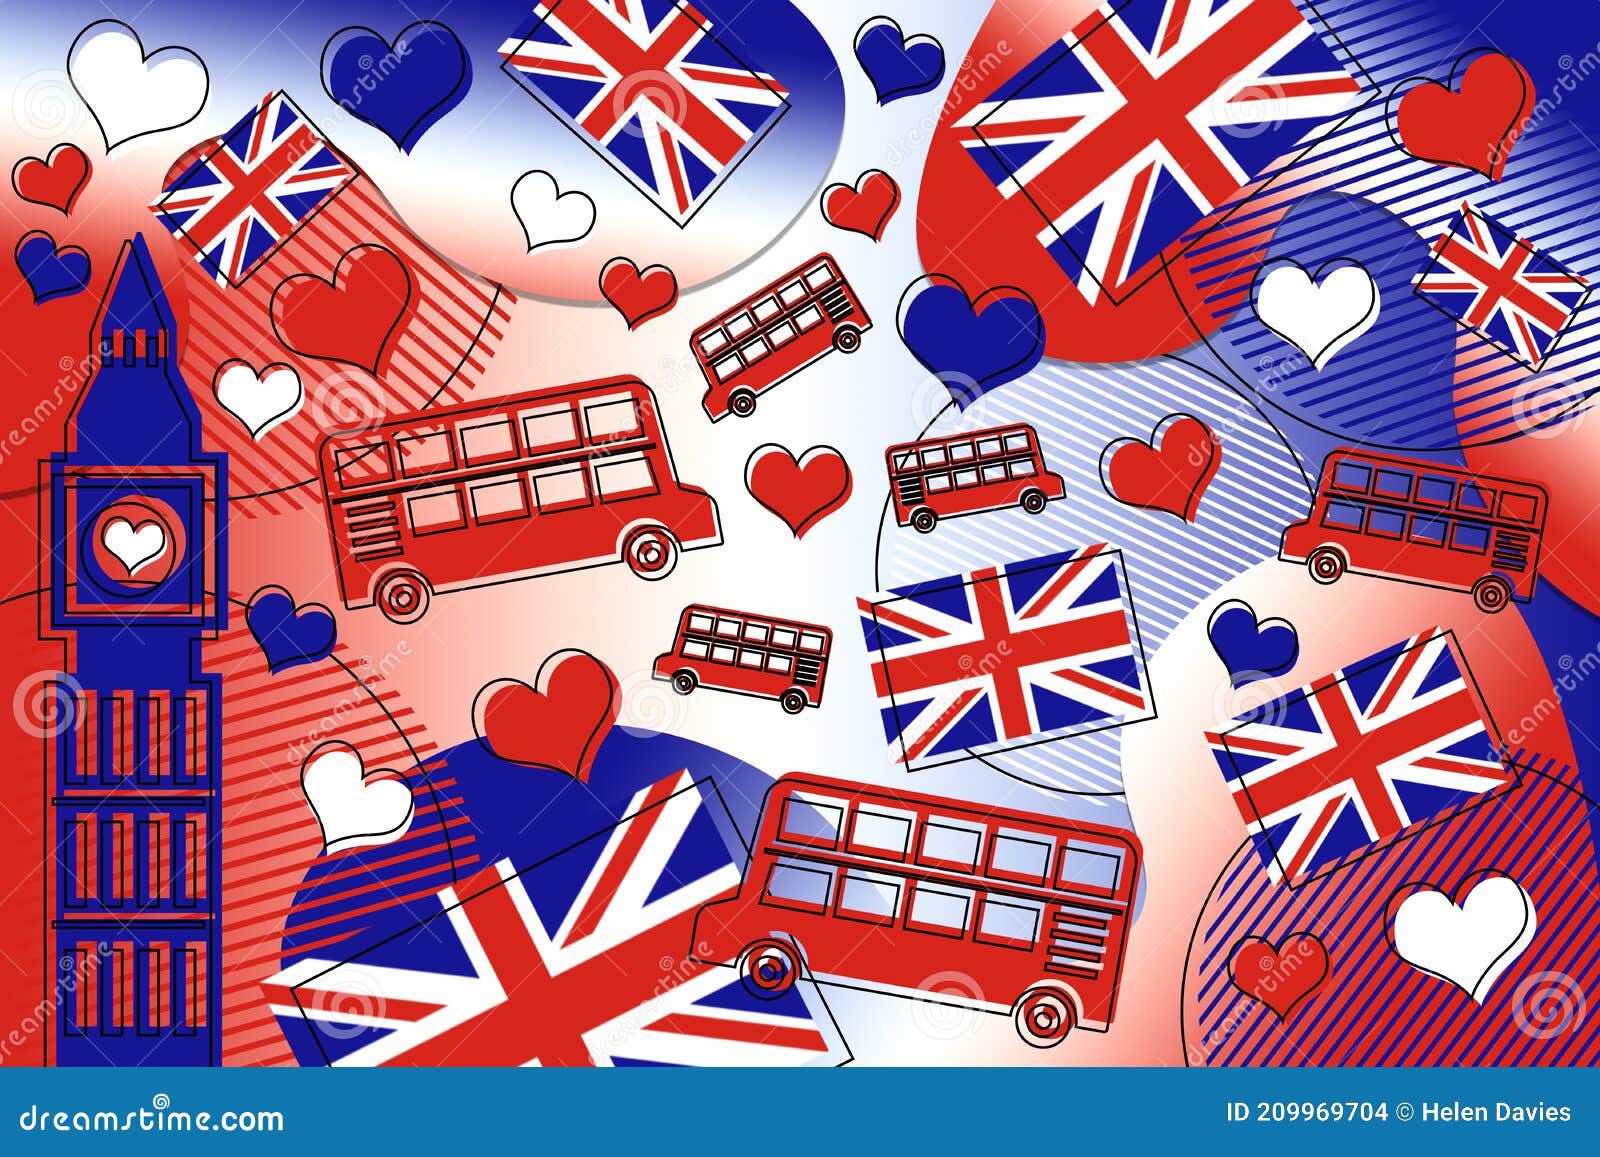 Nền đỏ với hình nền London, Vương quốc Anh mang đến cho chúng ta một cái nhìn về vẻ đẹp của thành phố vĩ đại này. Hãy vào xem hình ảnh để hiểu rõ hơn về vùng đất của những hoàng tử, hoàng hậu và những di tích lịch sử khác nhau, cùng với vẻ đẹp thiên nhiên tuyệt đẹp của Vương quốc Anh.